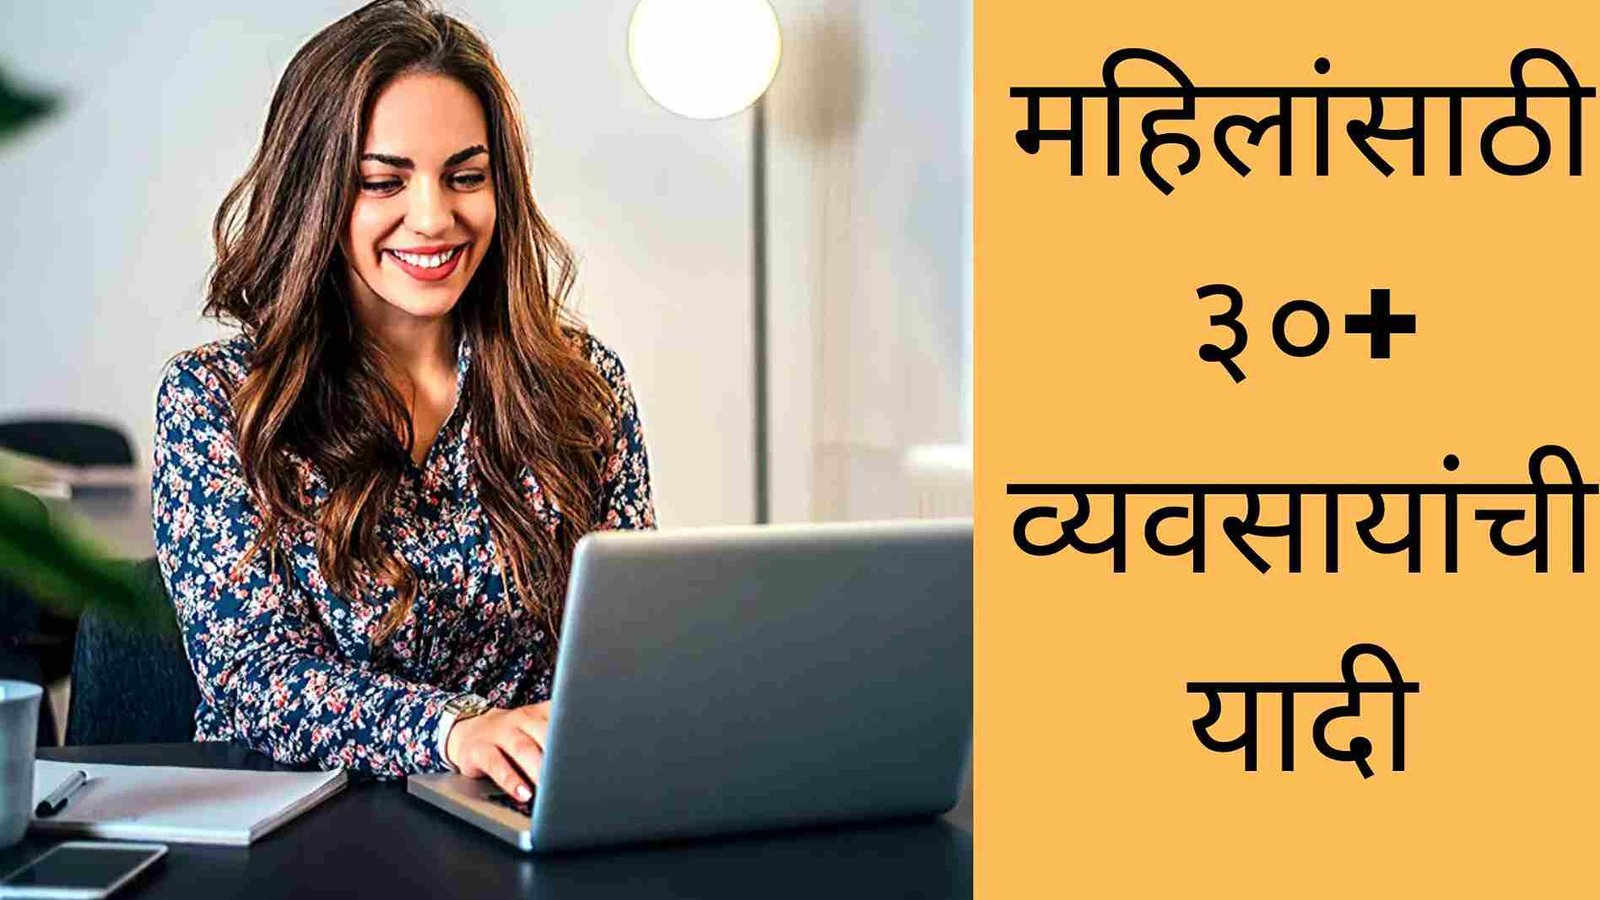 कमी गुंतवणूक करून महिलांसाठी ३०+ व्यवसायांची यादी | 30+ Business Ideas For Women In Marathi